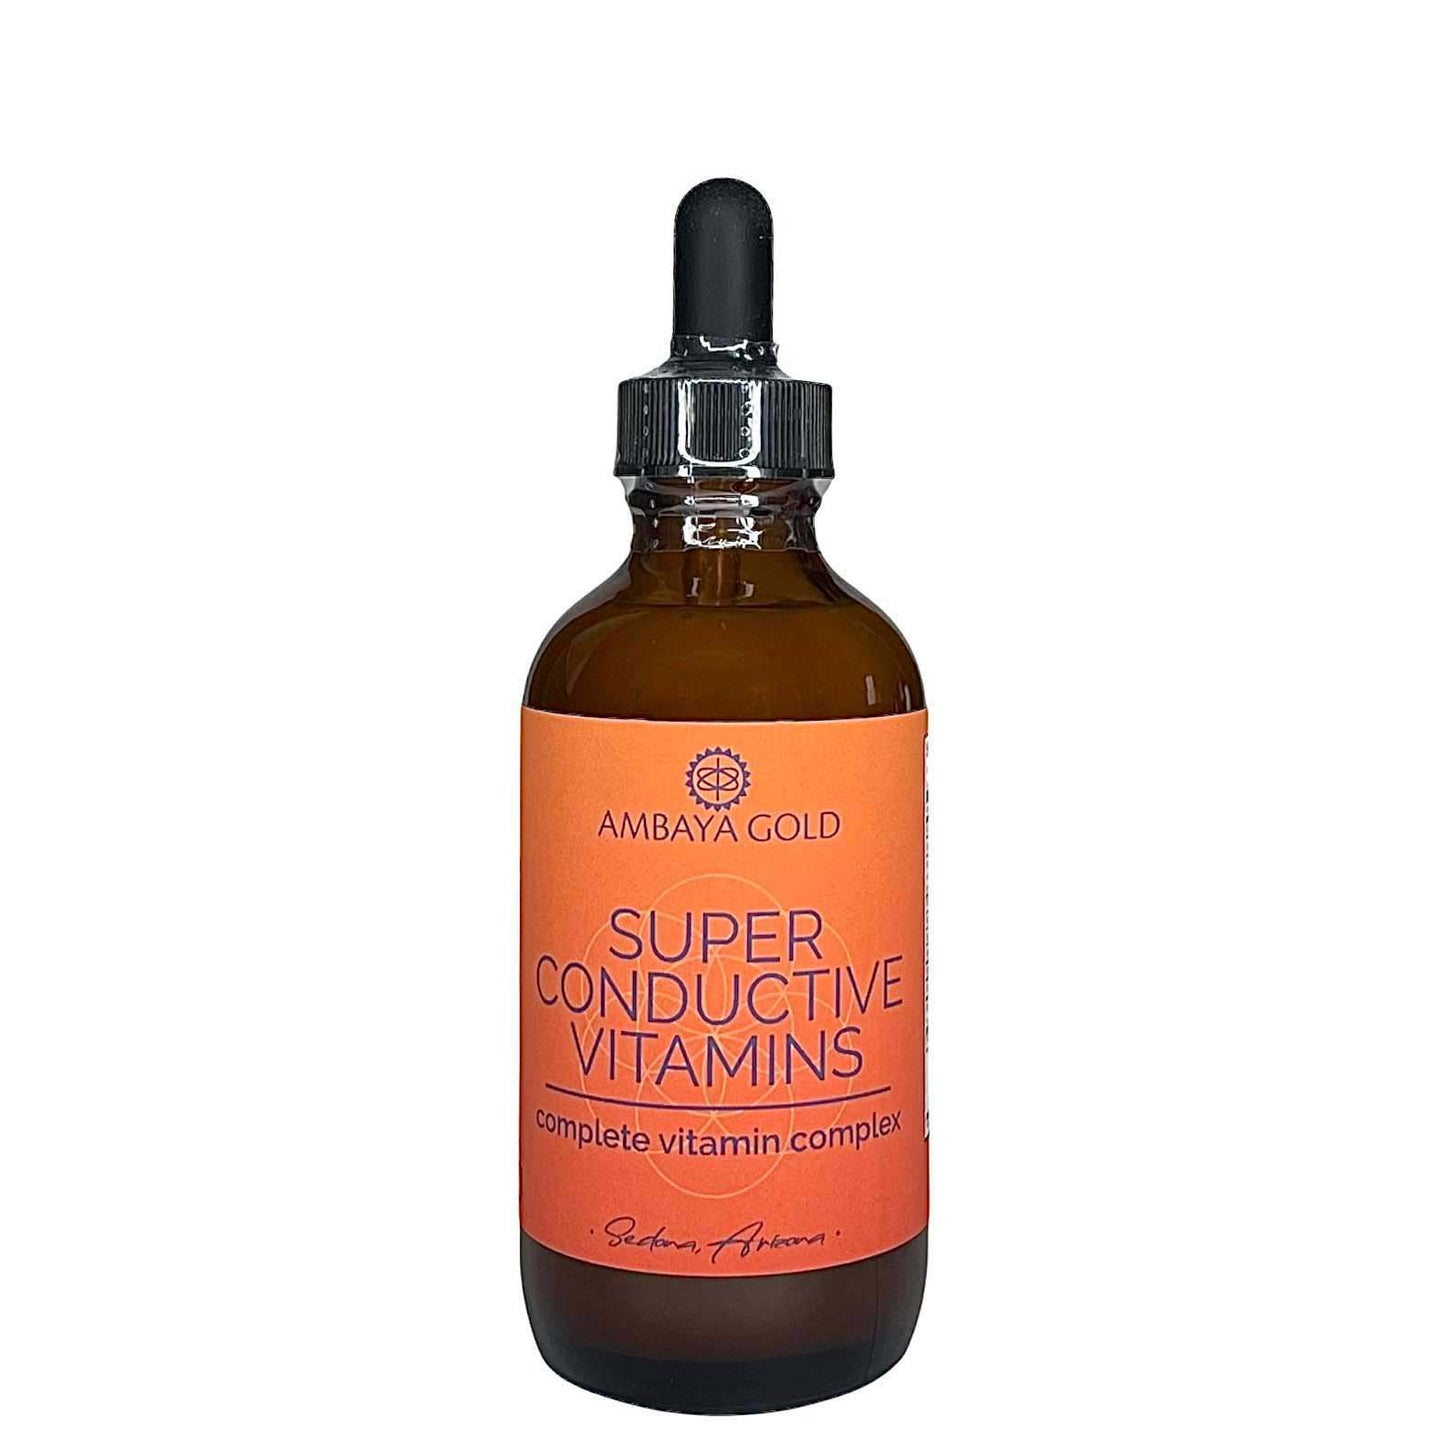 Super-Conductive Vitamins